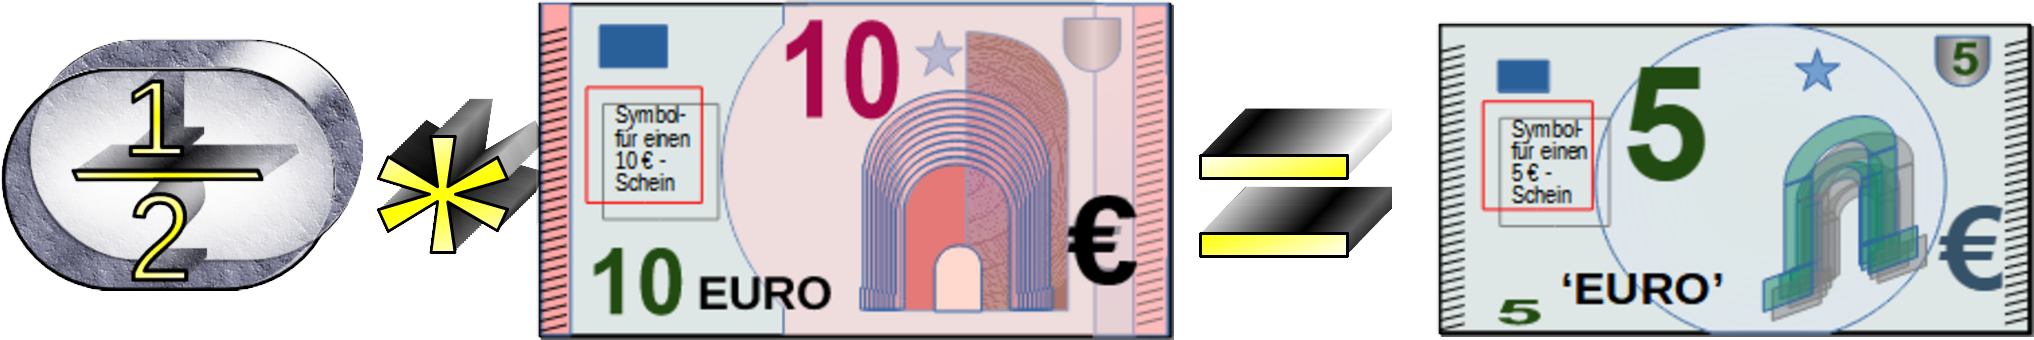 Â½ mal 10 Euro = 5 Euro 